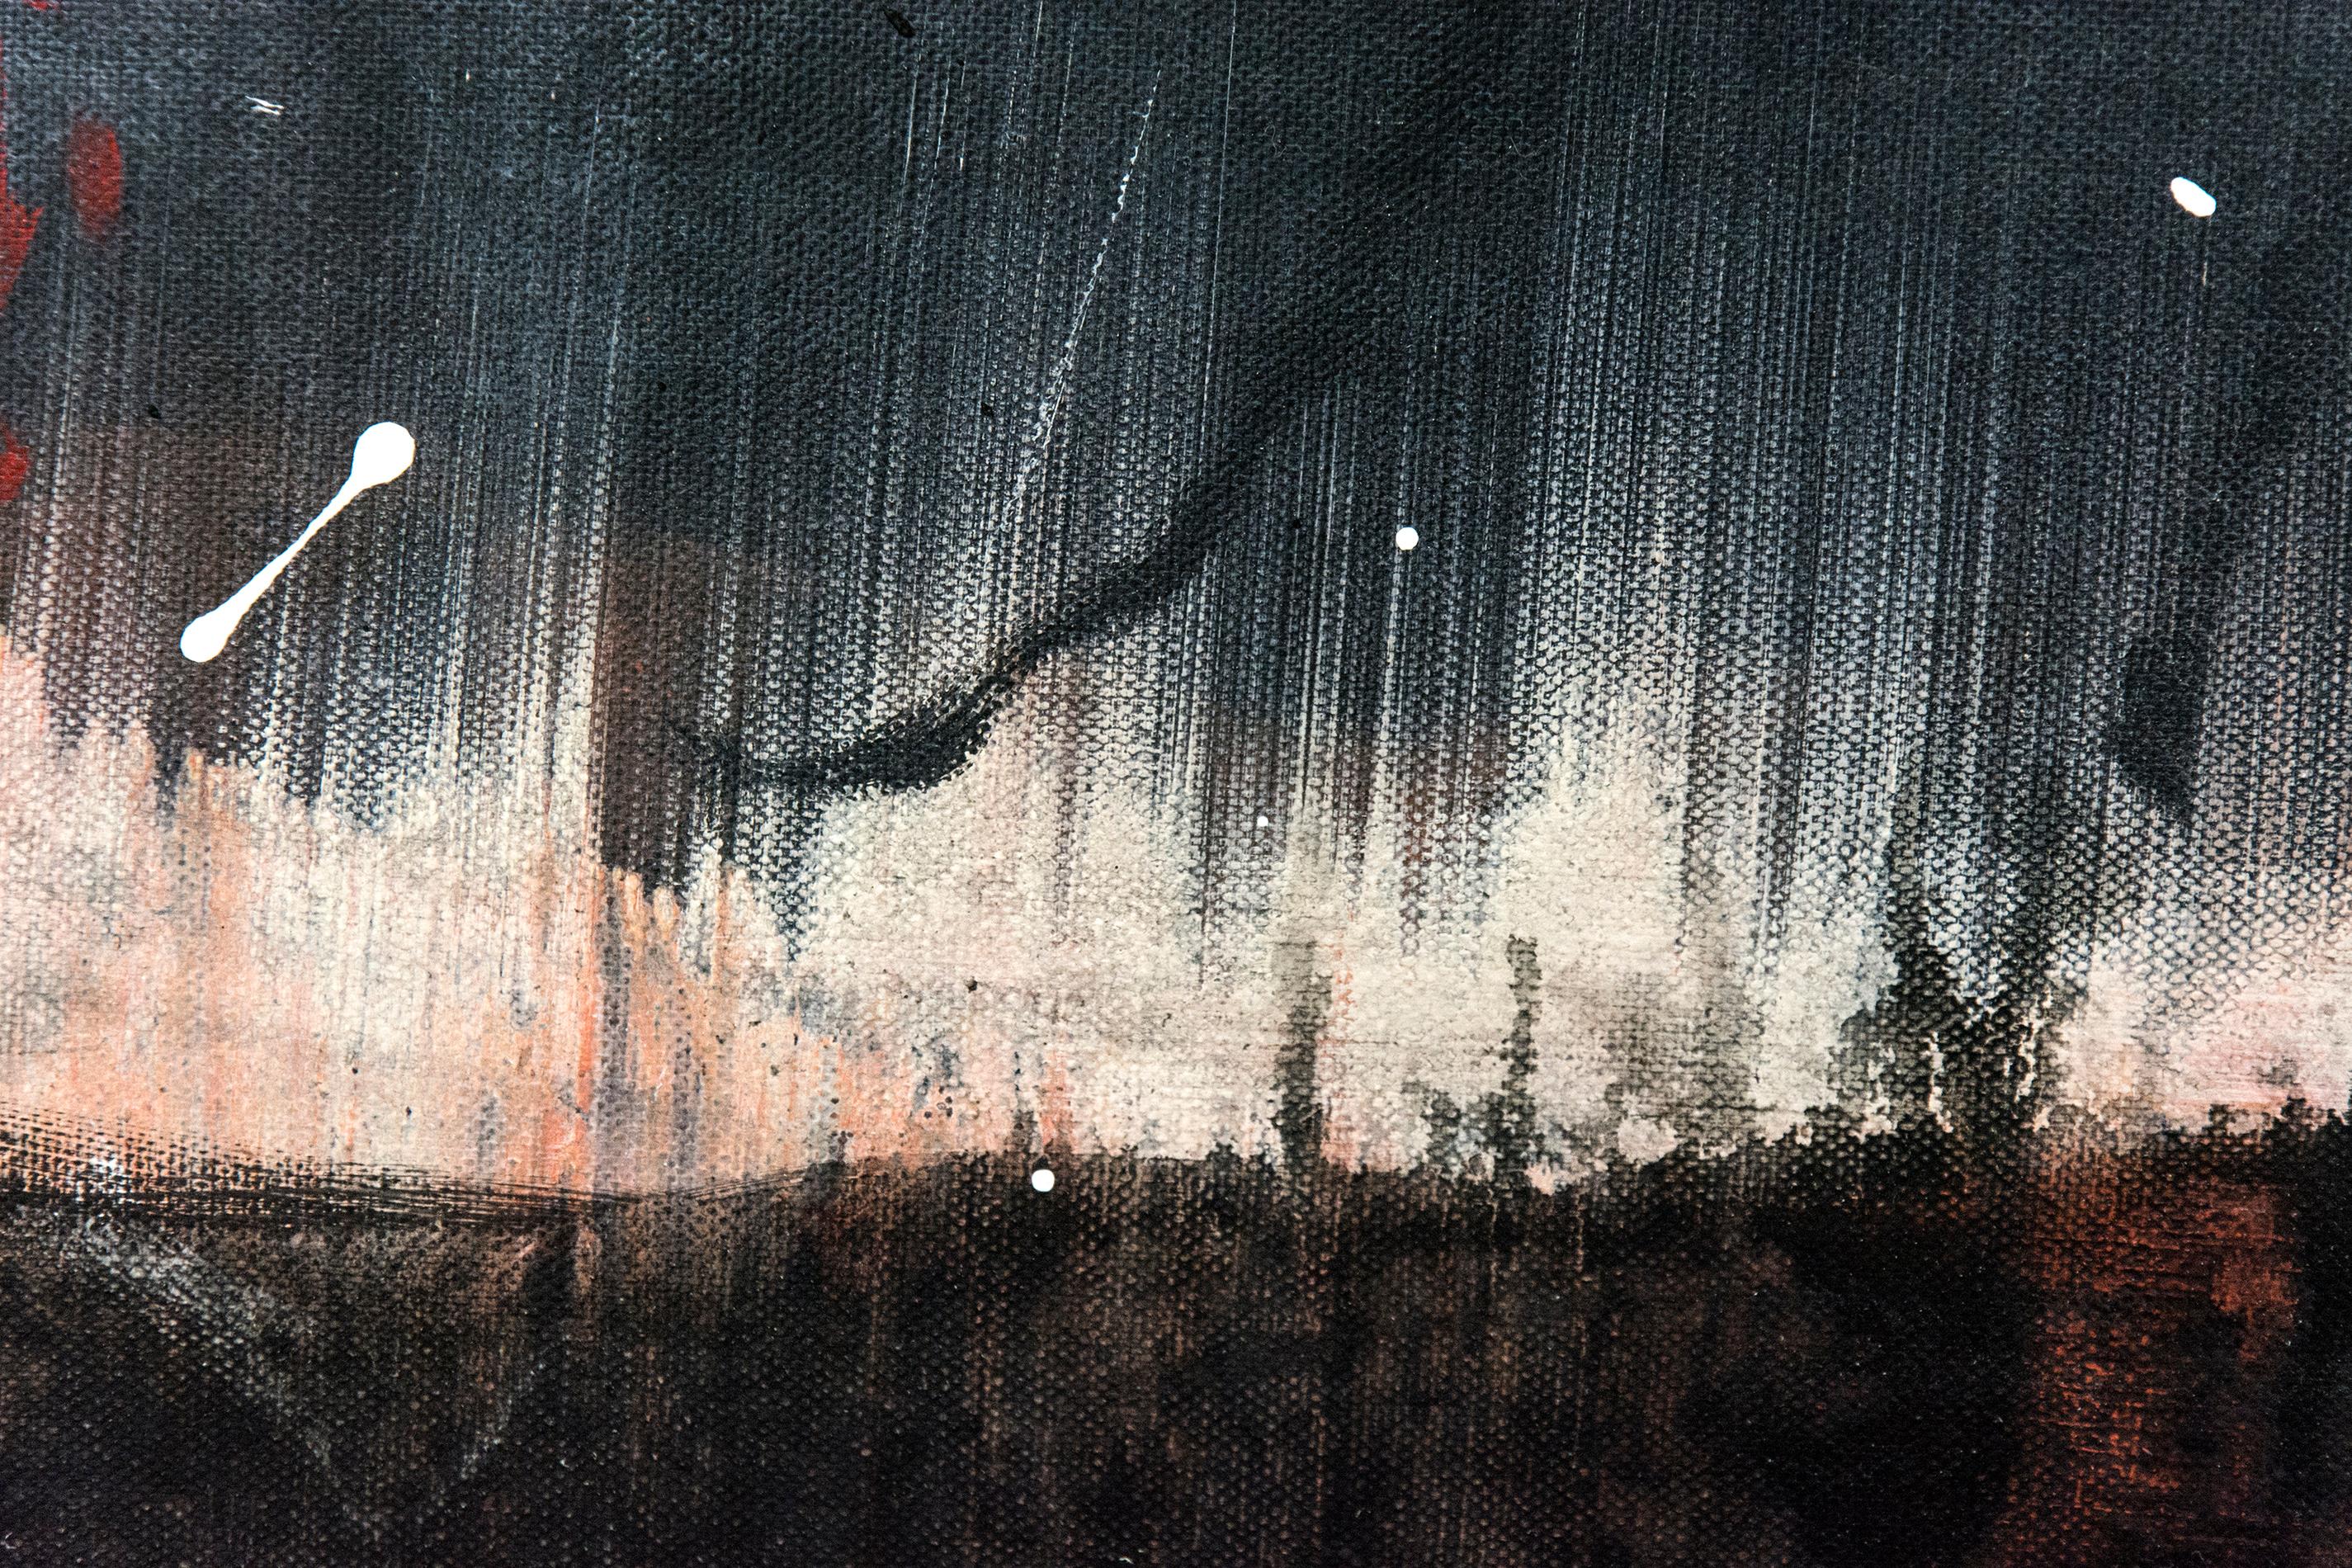 In diesem dynamischen Acrylbild von Lynne Fernie erhellen malerische Striche und Tropfen einen stimmungsvollen Himmel. Der feurige Horizont verstärkt das Gefühl des aufziehenden Sturms.

Lynne Fernie ist eine Künstlerin aus Toronto, OCAD-Absolventin